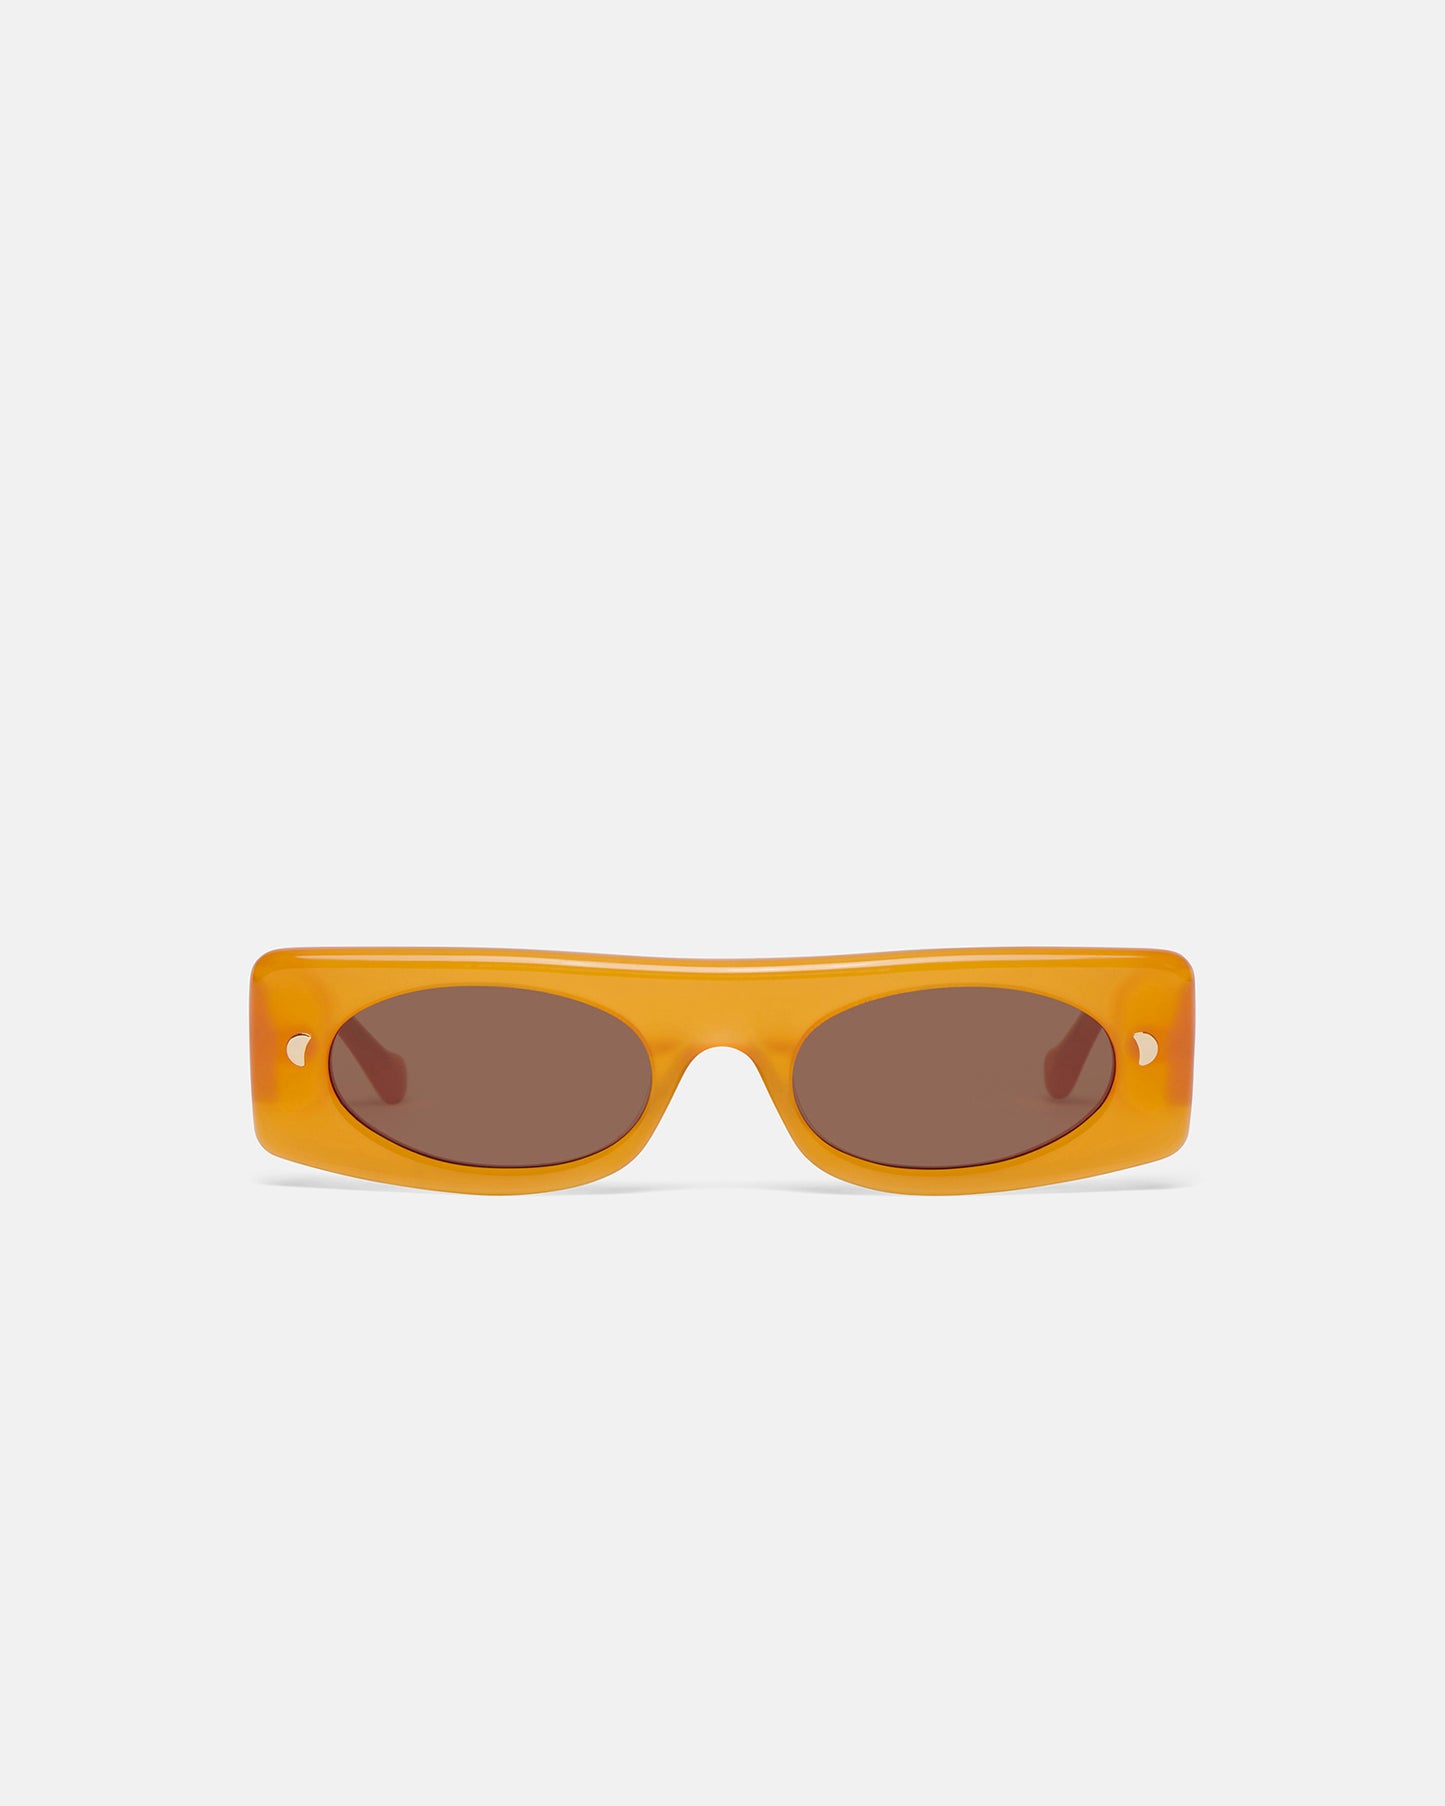 Ruthie - Bio-Plastic Visor Sunglasses - Orange Merino